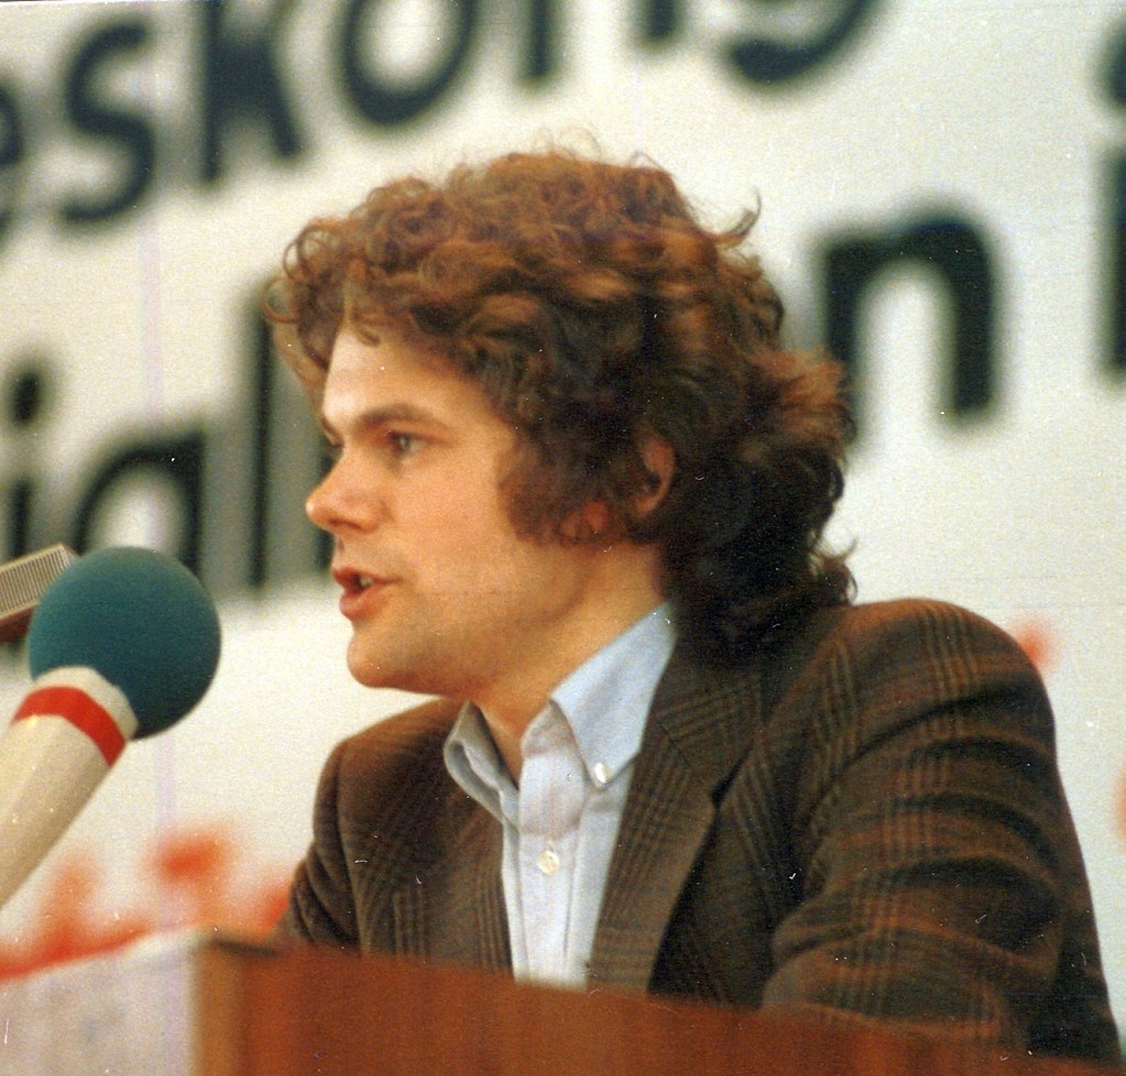 Der junge Olaf Scholz wurde in den 1980er Jahren durch die Staatssicherheit der DDR beobachtet. (Archivbild)